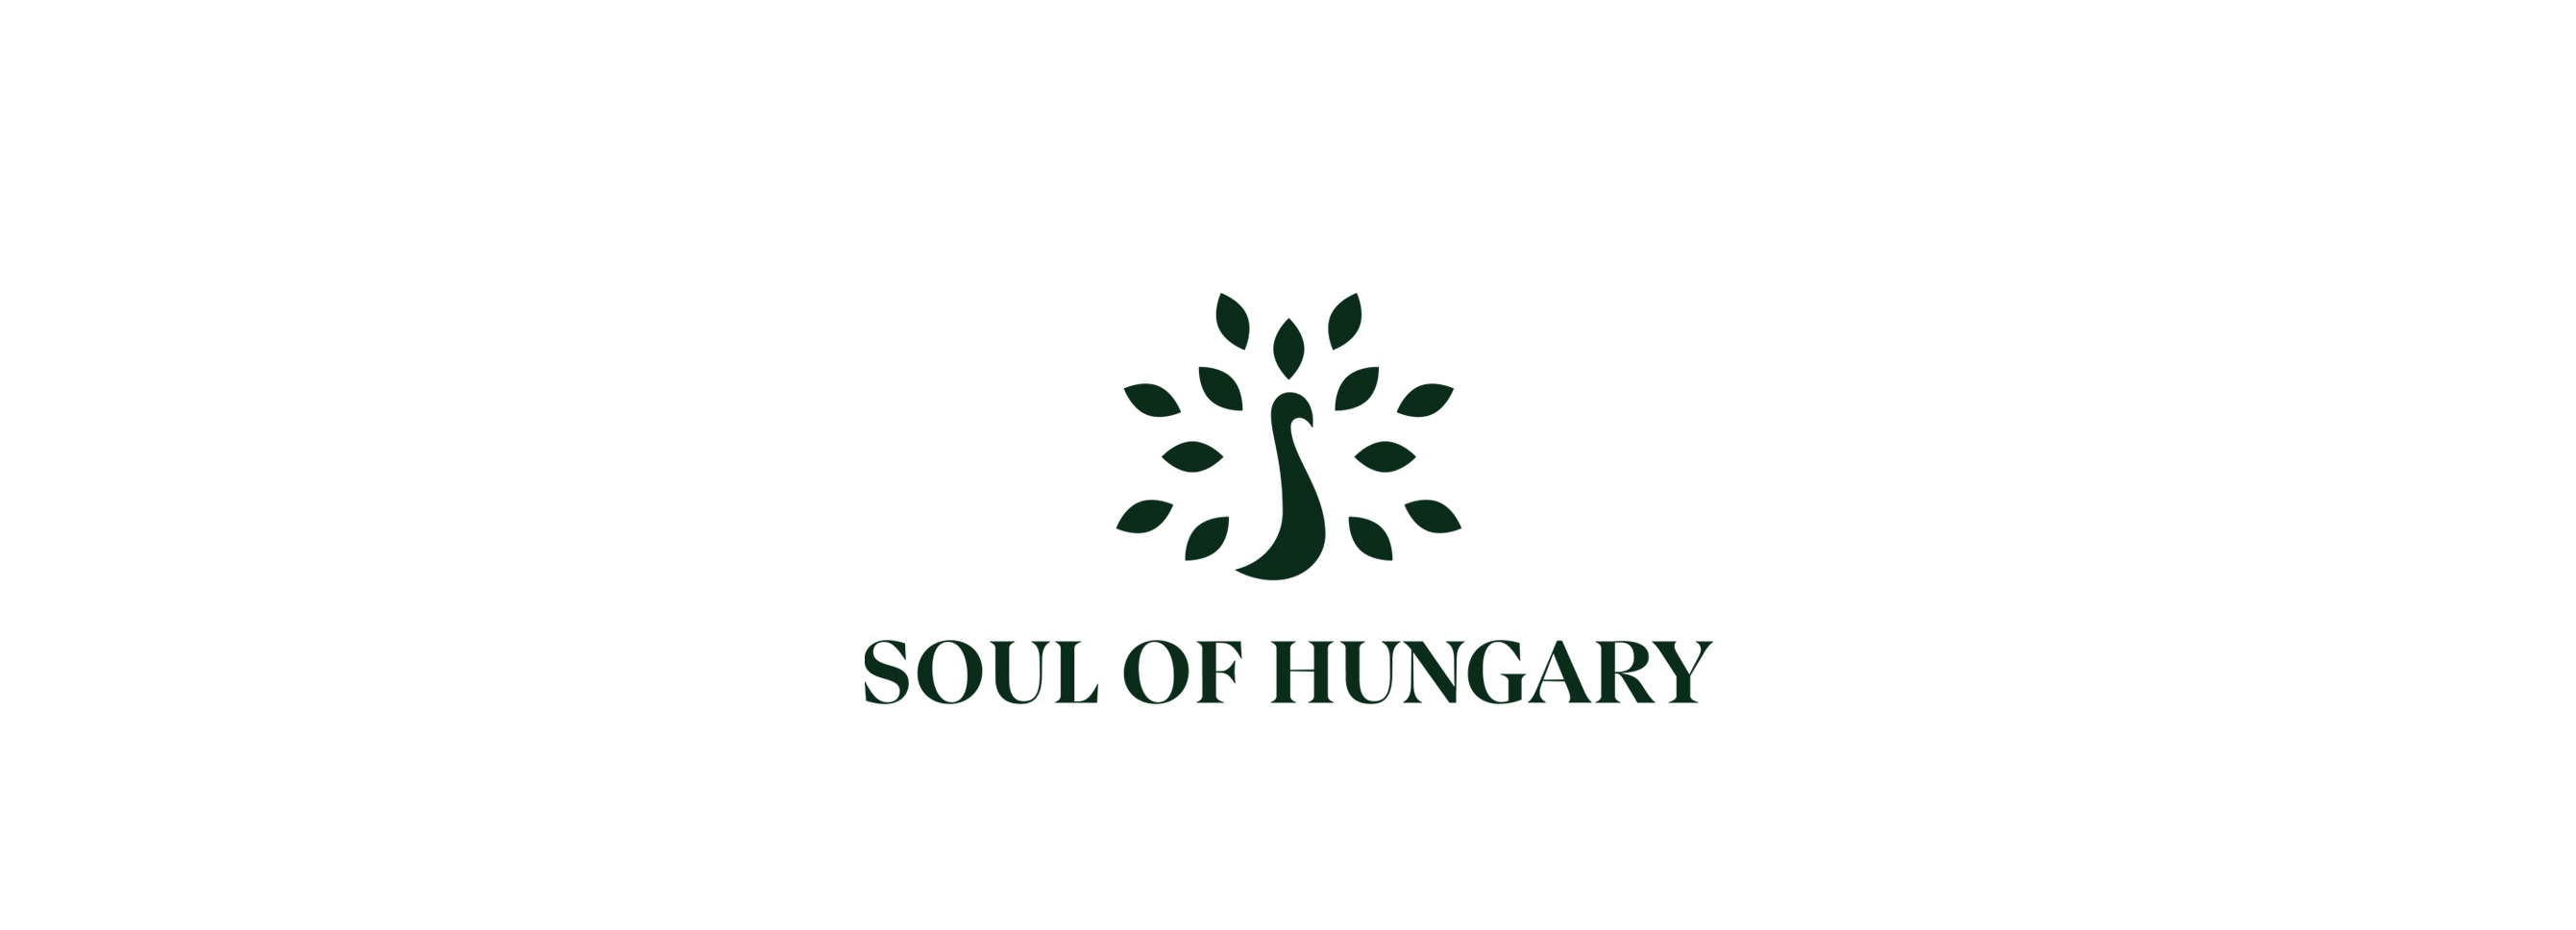 Hölgyeim és uraim, figyelem! Bemutatkozik a Soul of Hungary